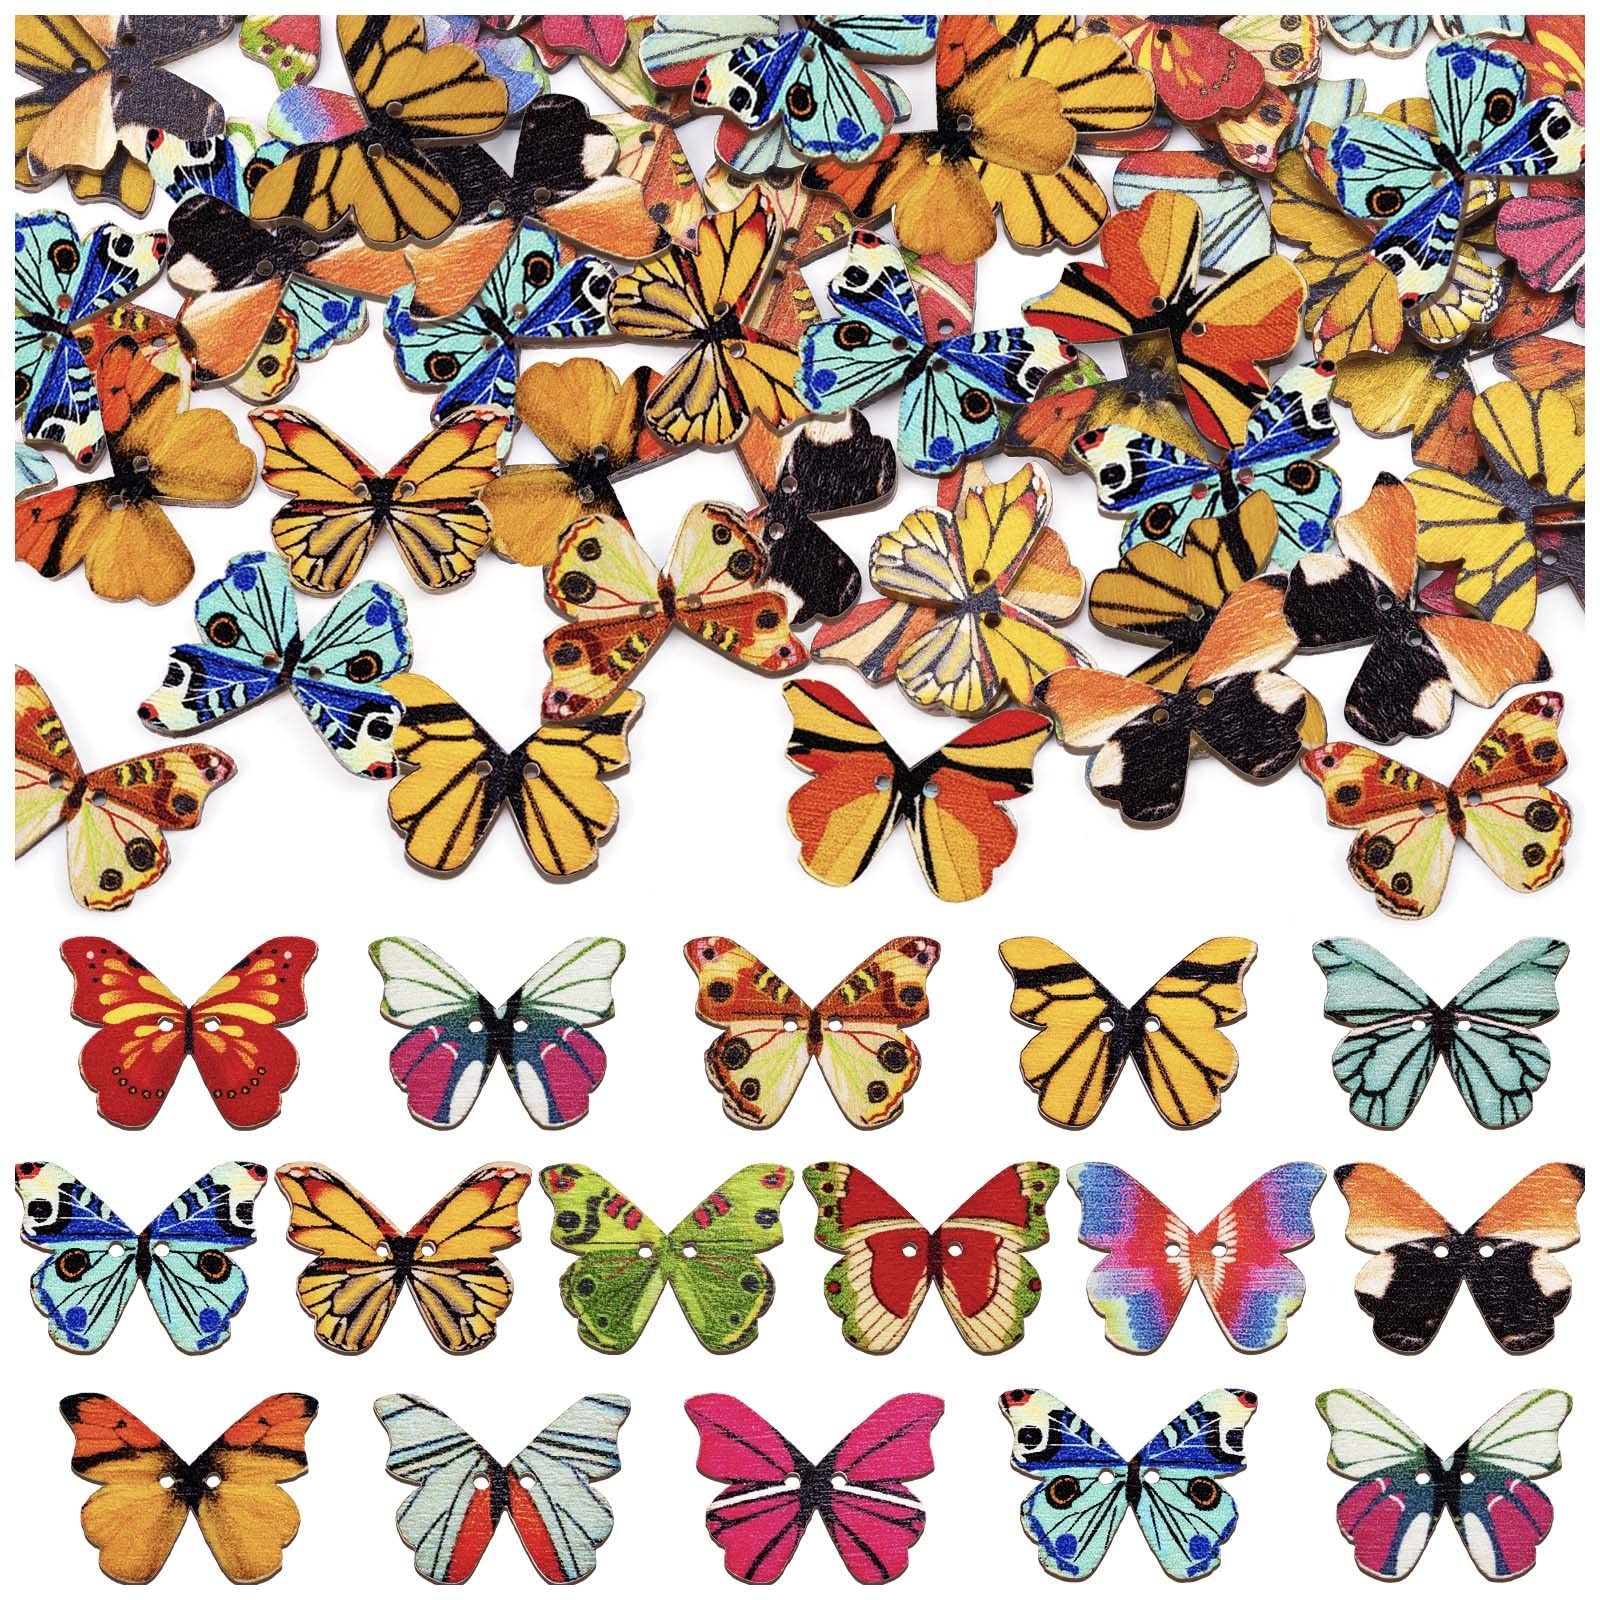 Felt stickers - Butterflies, 200 pcs.